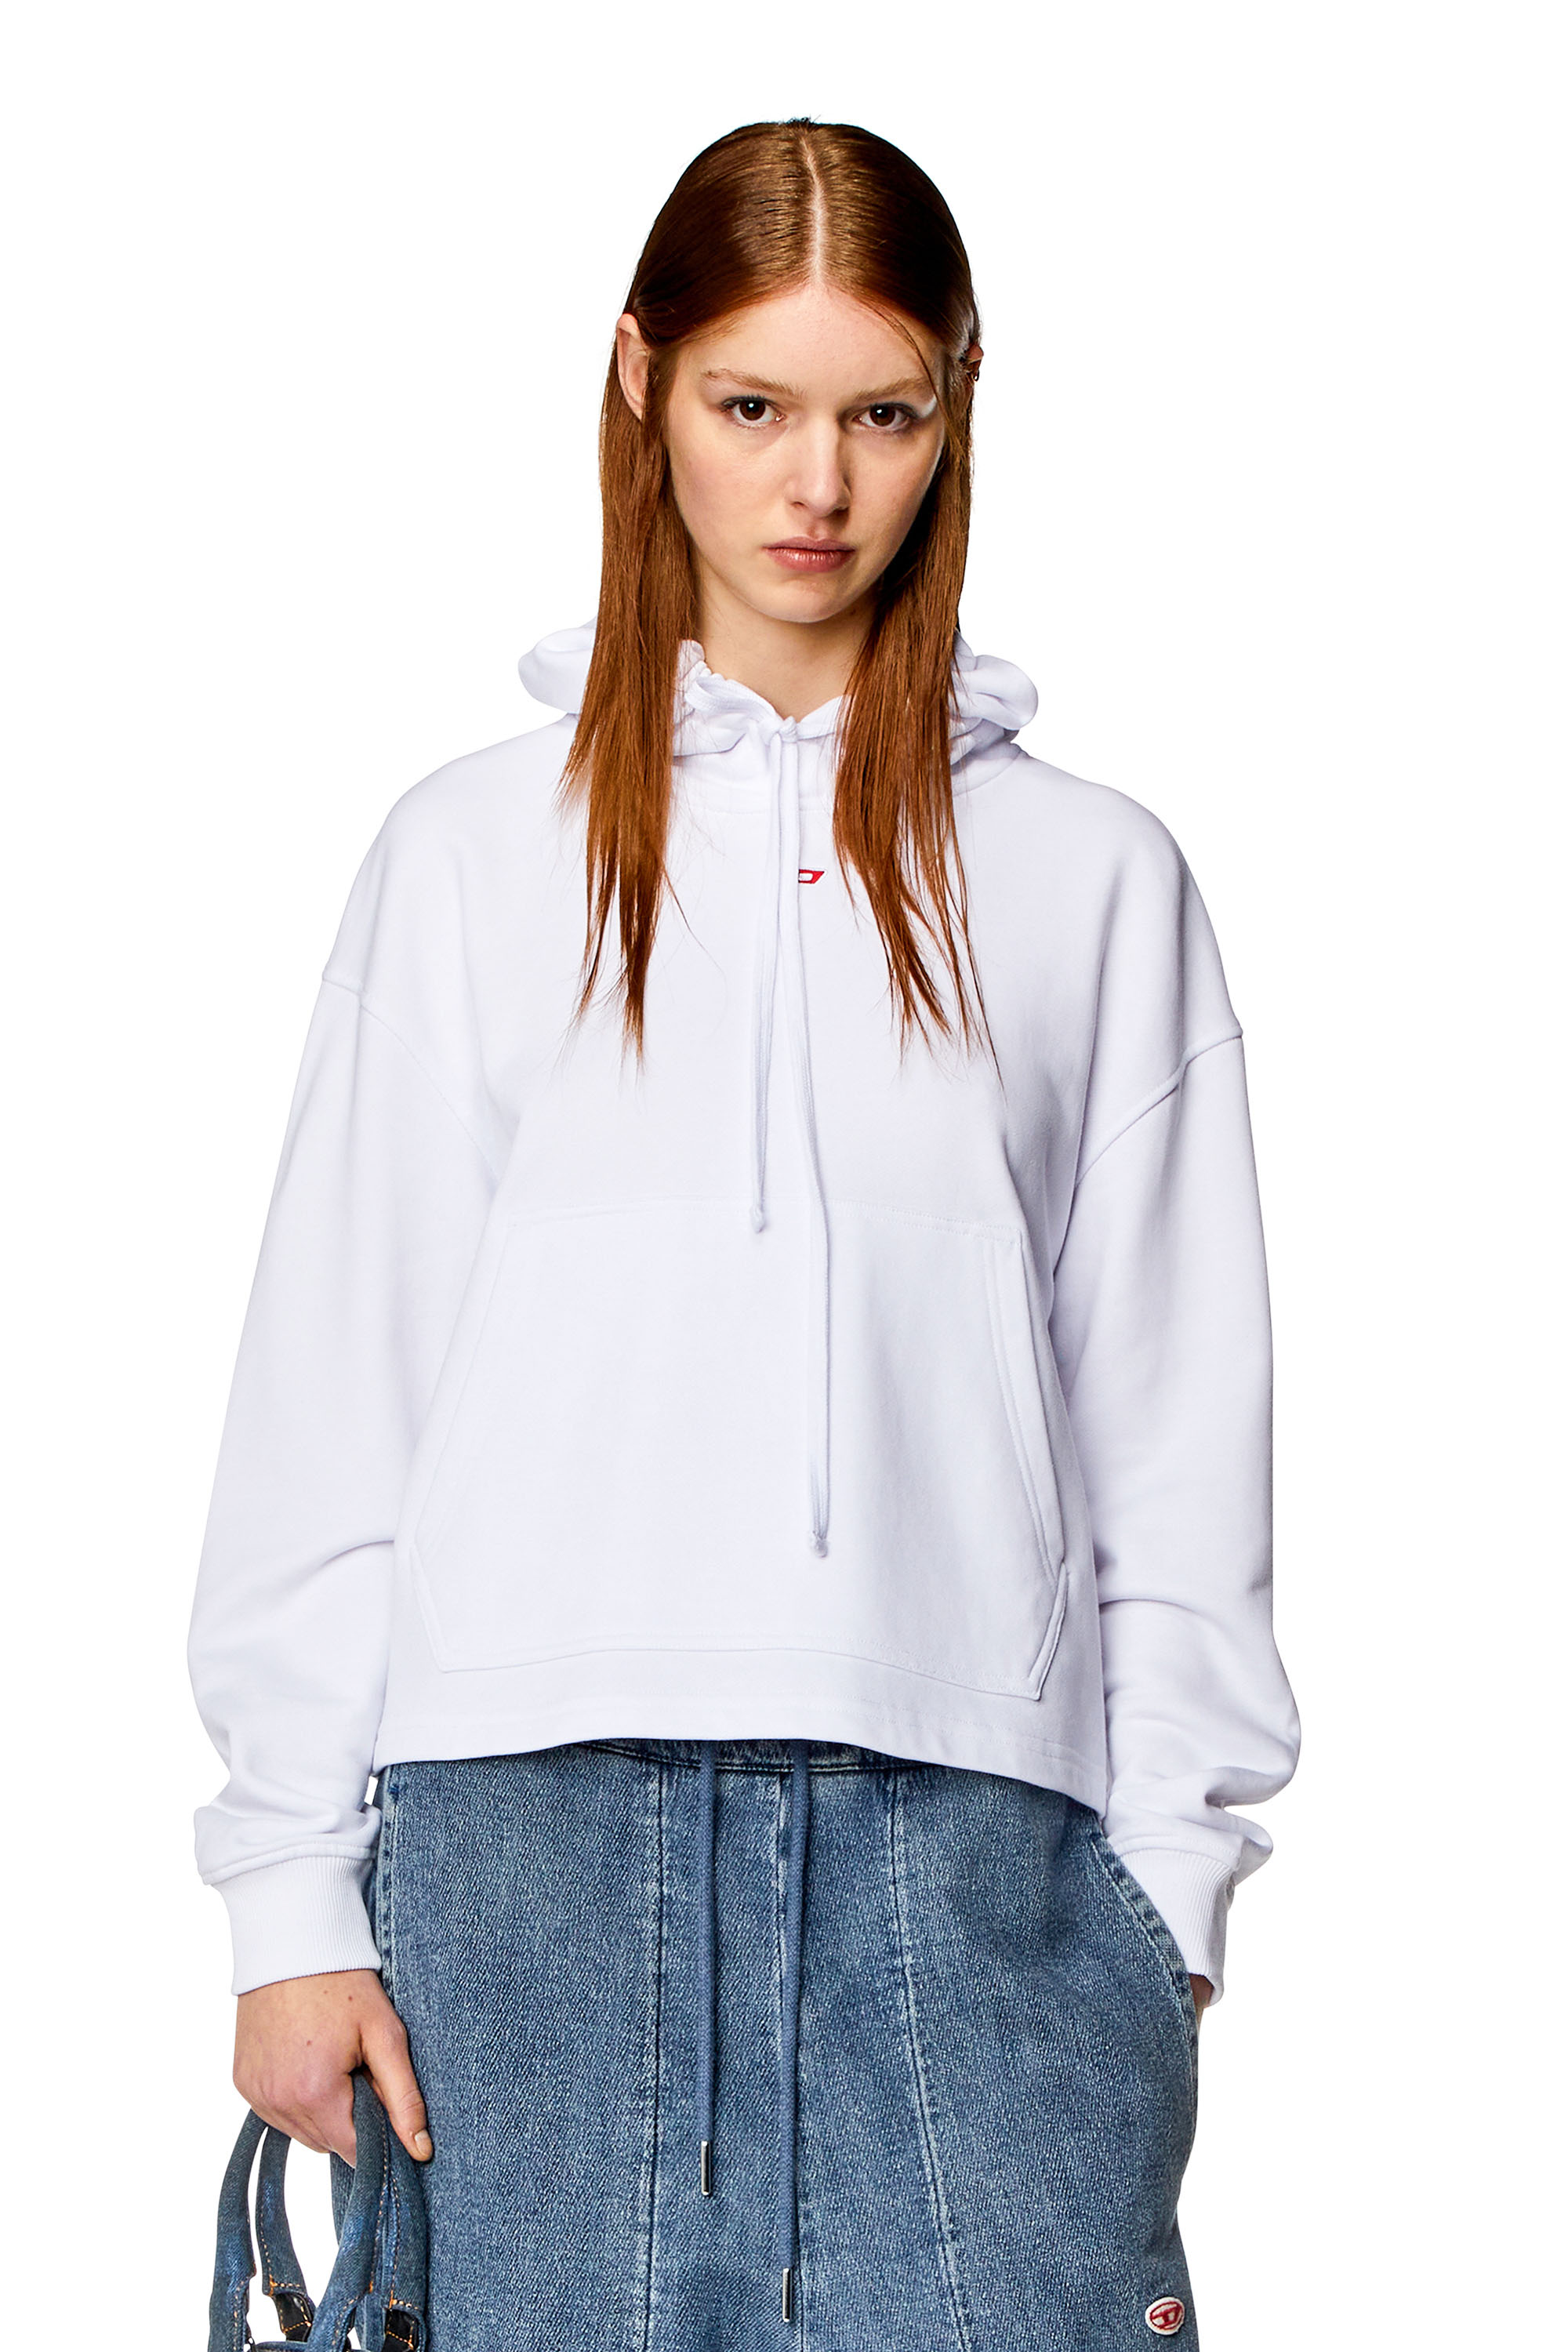 Diesel - Sweat-shirt à capuche oversize avec empiècement D - Pull Cotton - Femme - Blanc